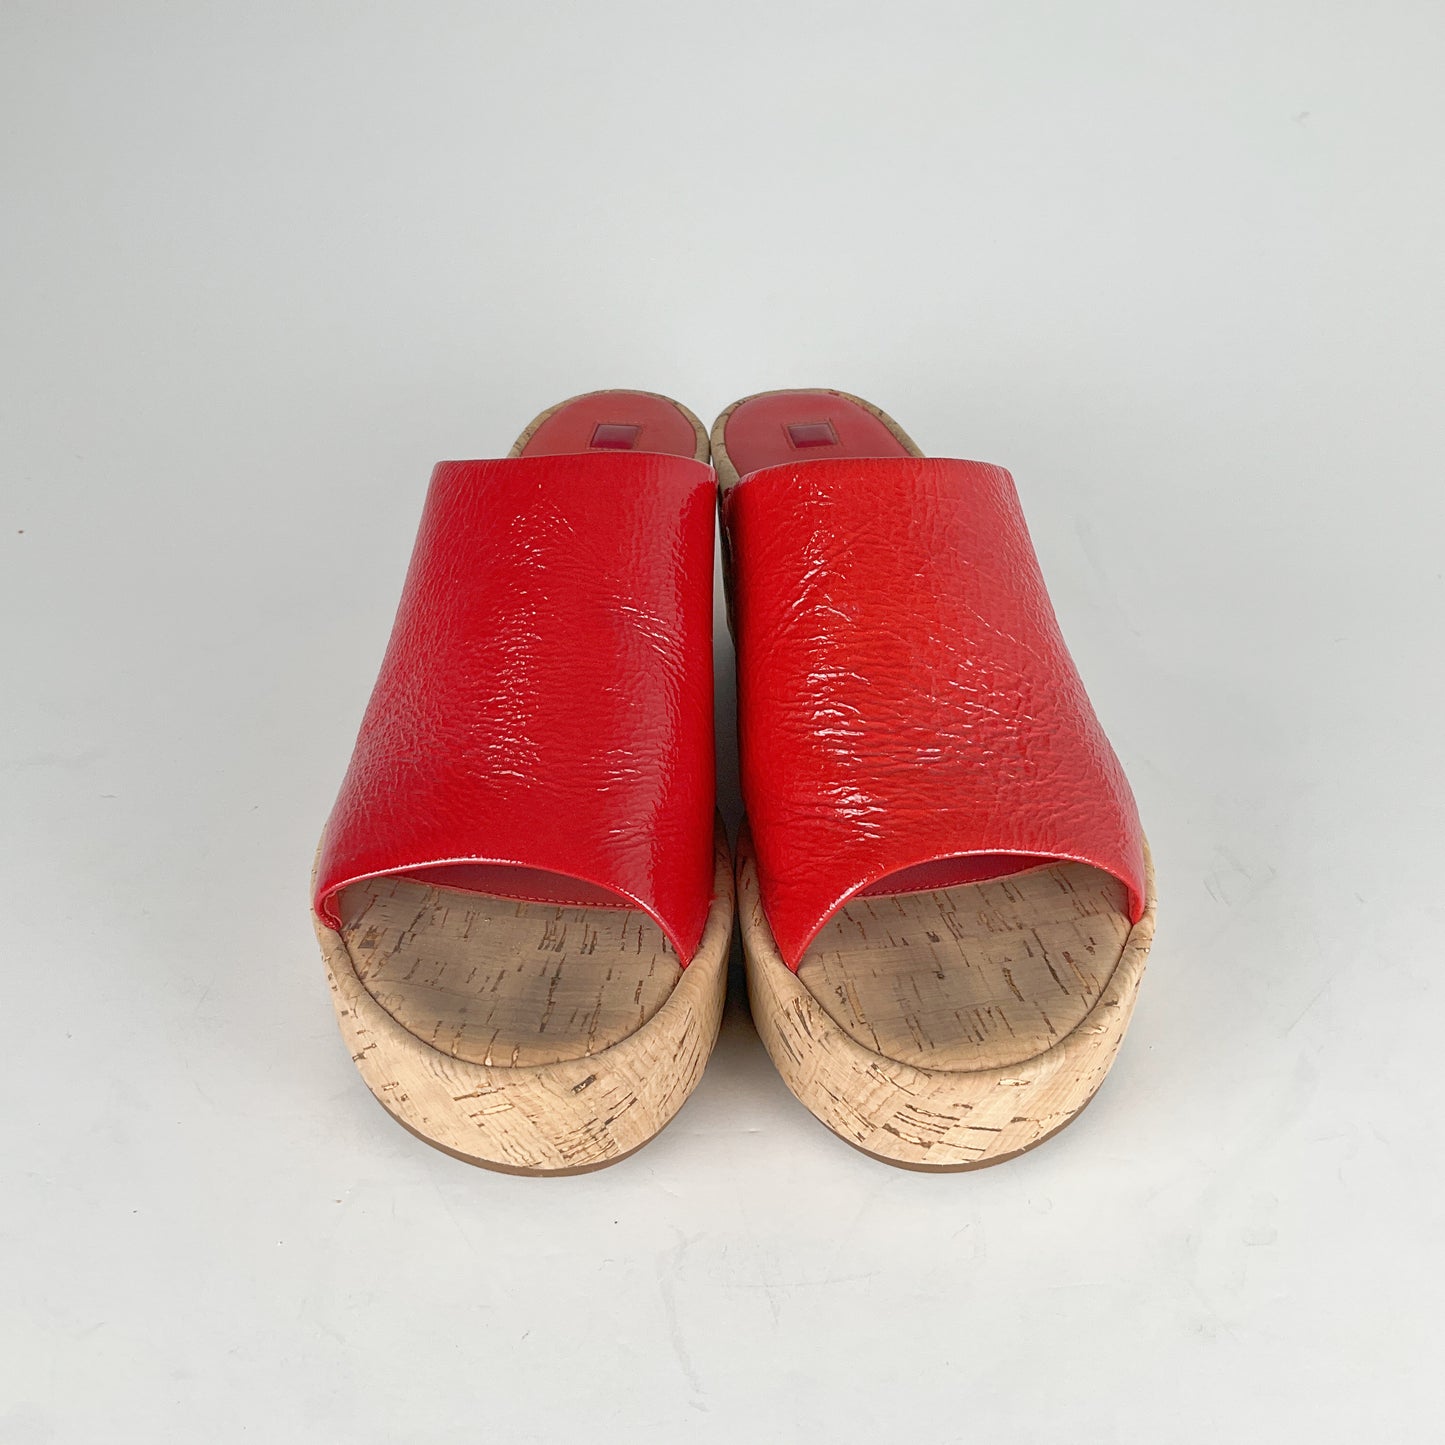 HOGL - Scarlet Red Cork Wedges - Size UK 5